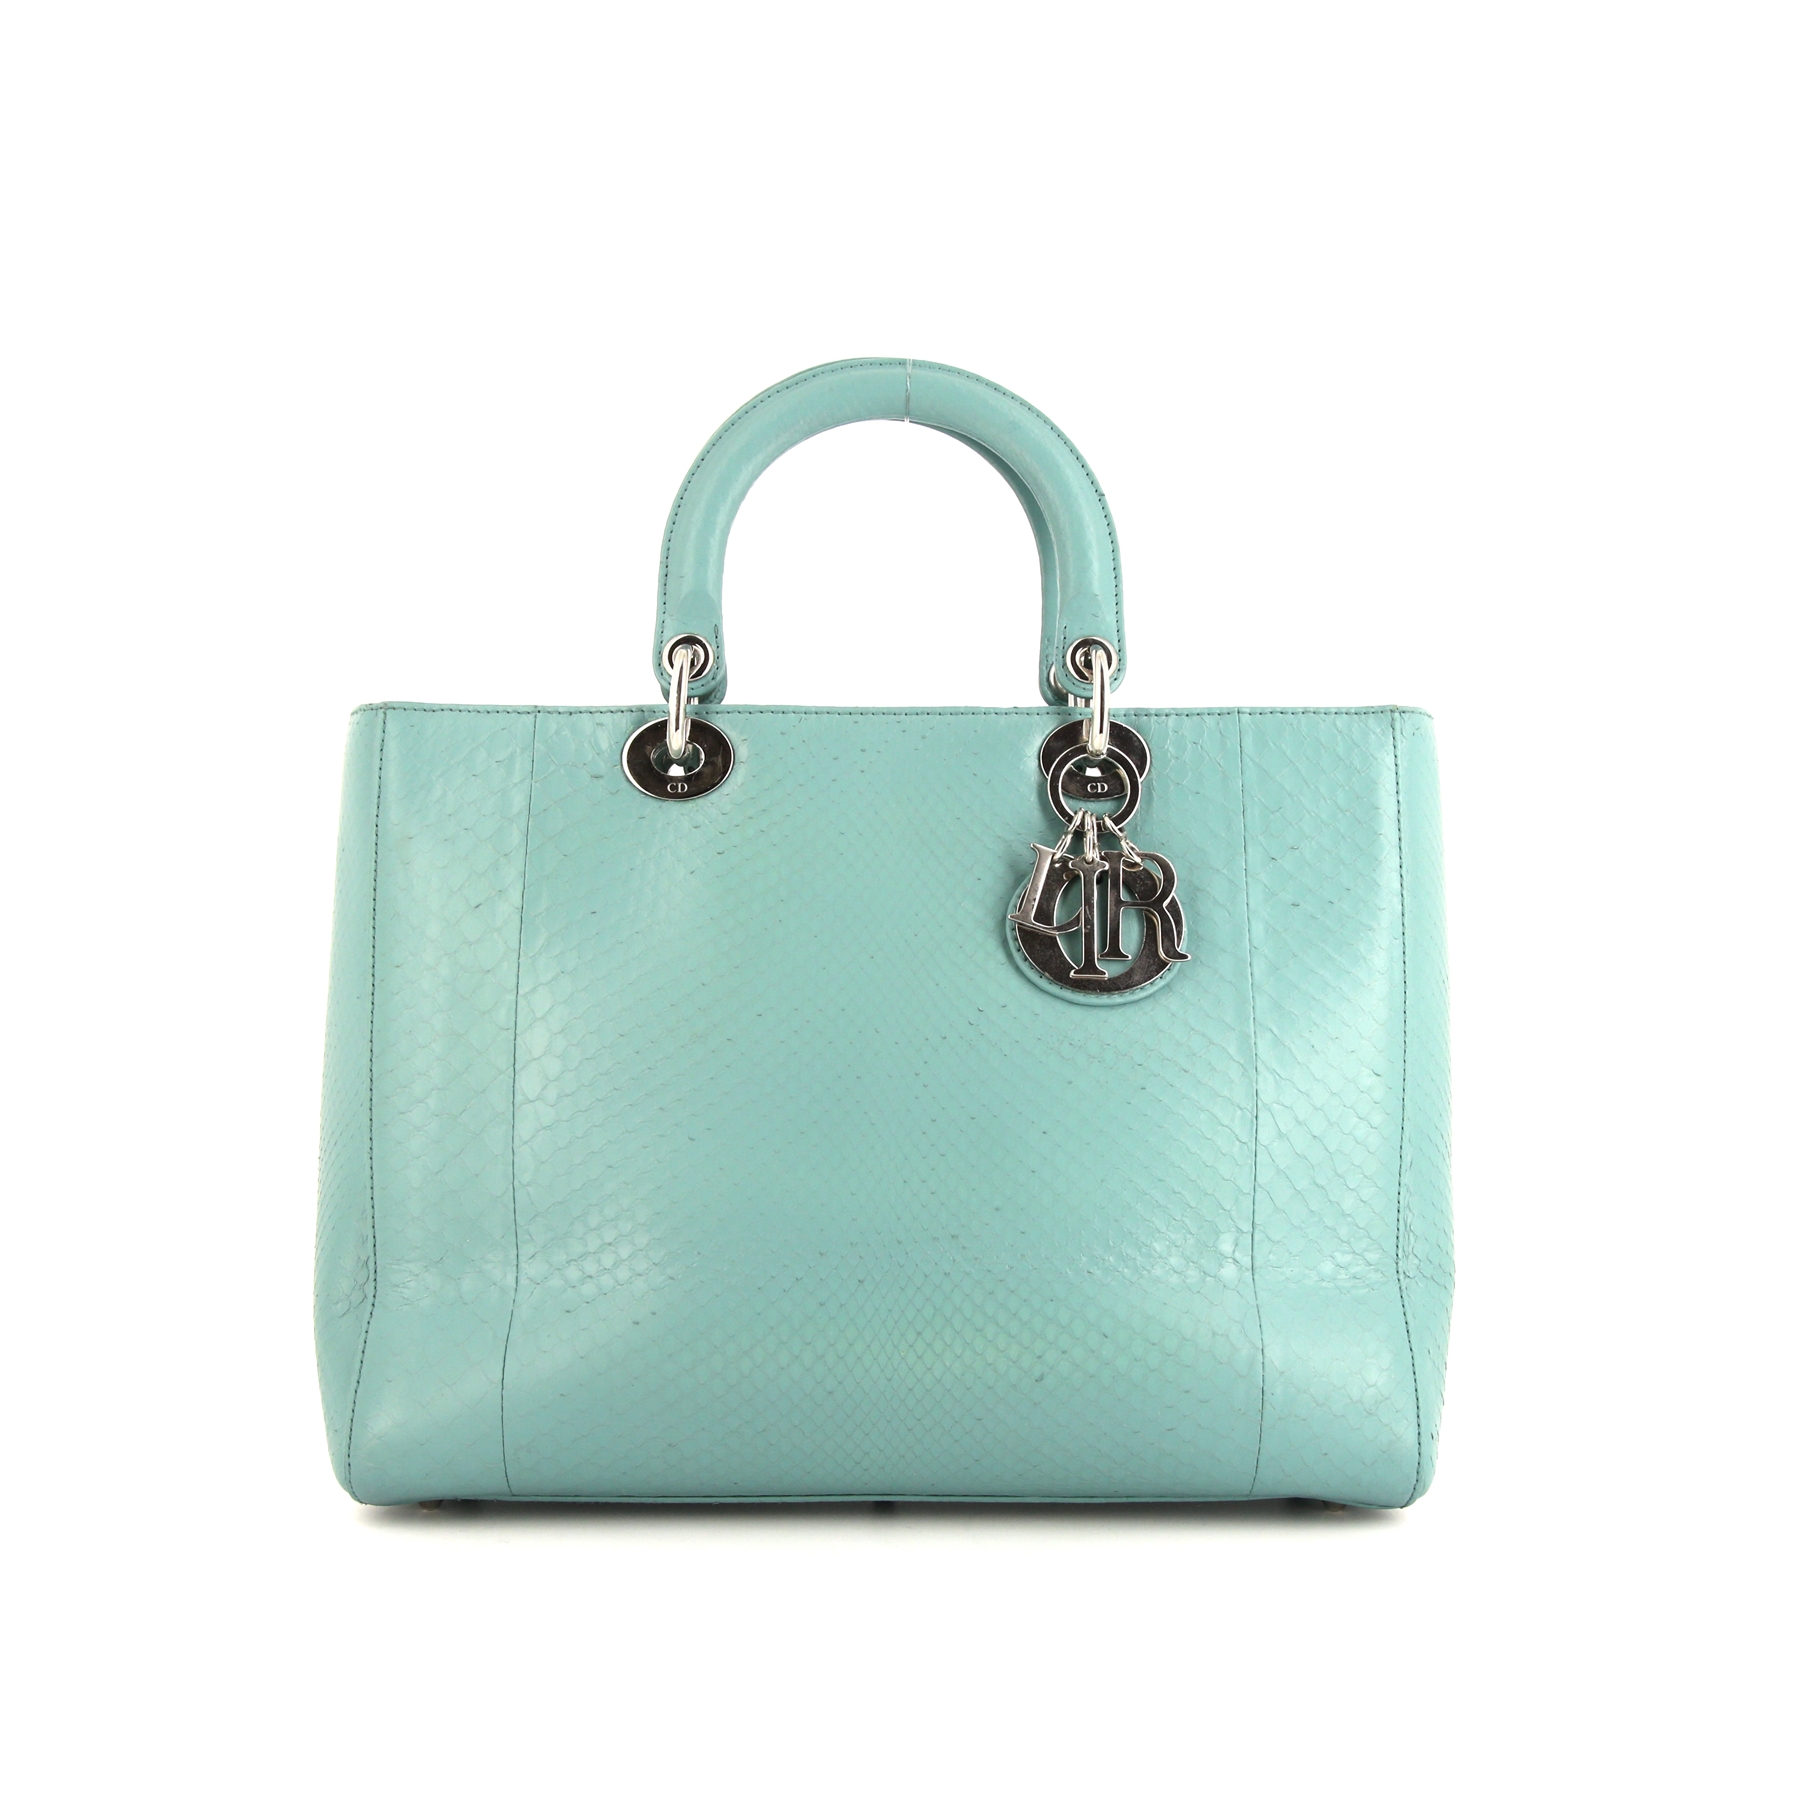 Lady Dior Large Model Handbag In Blue Python